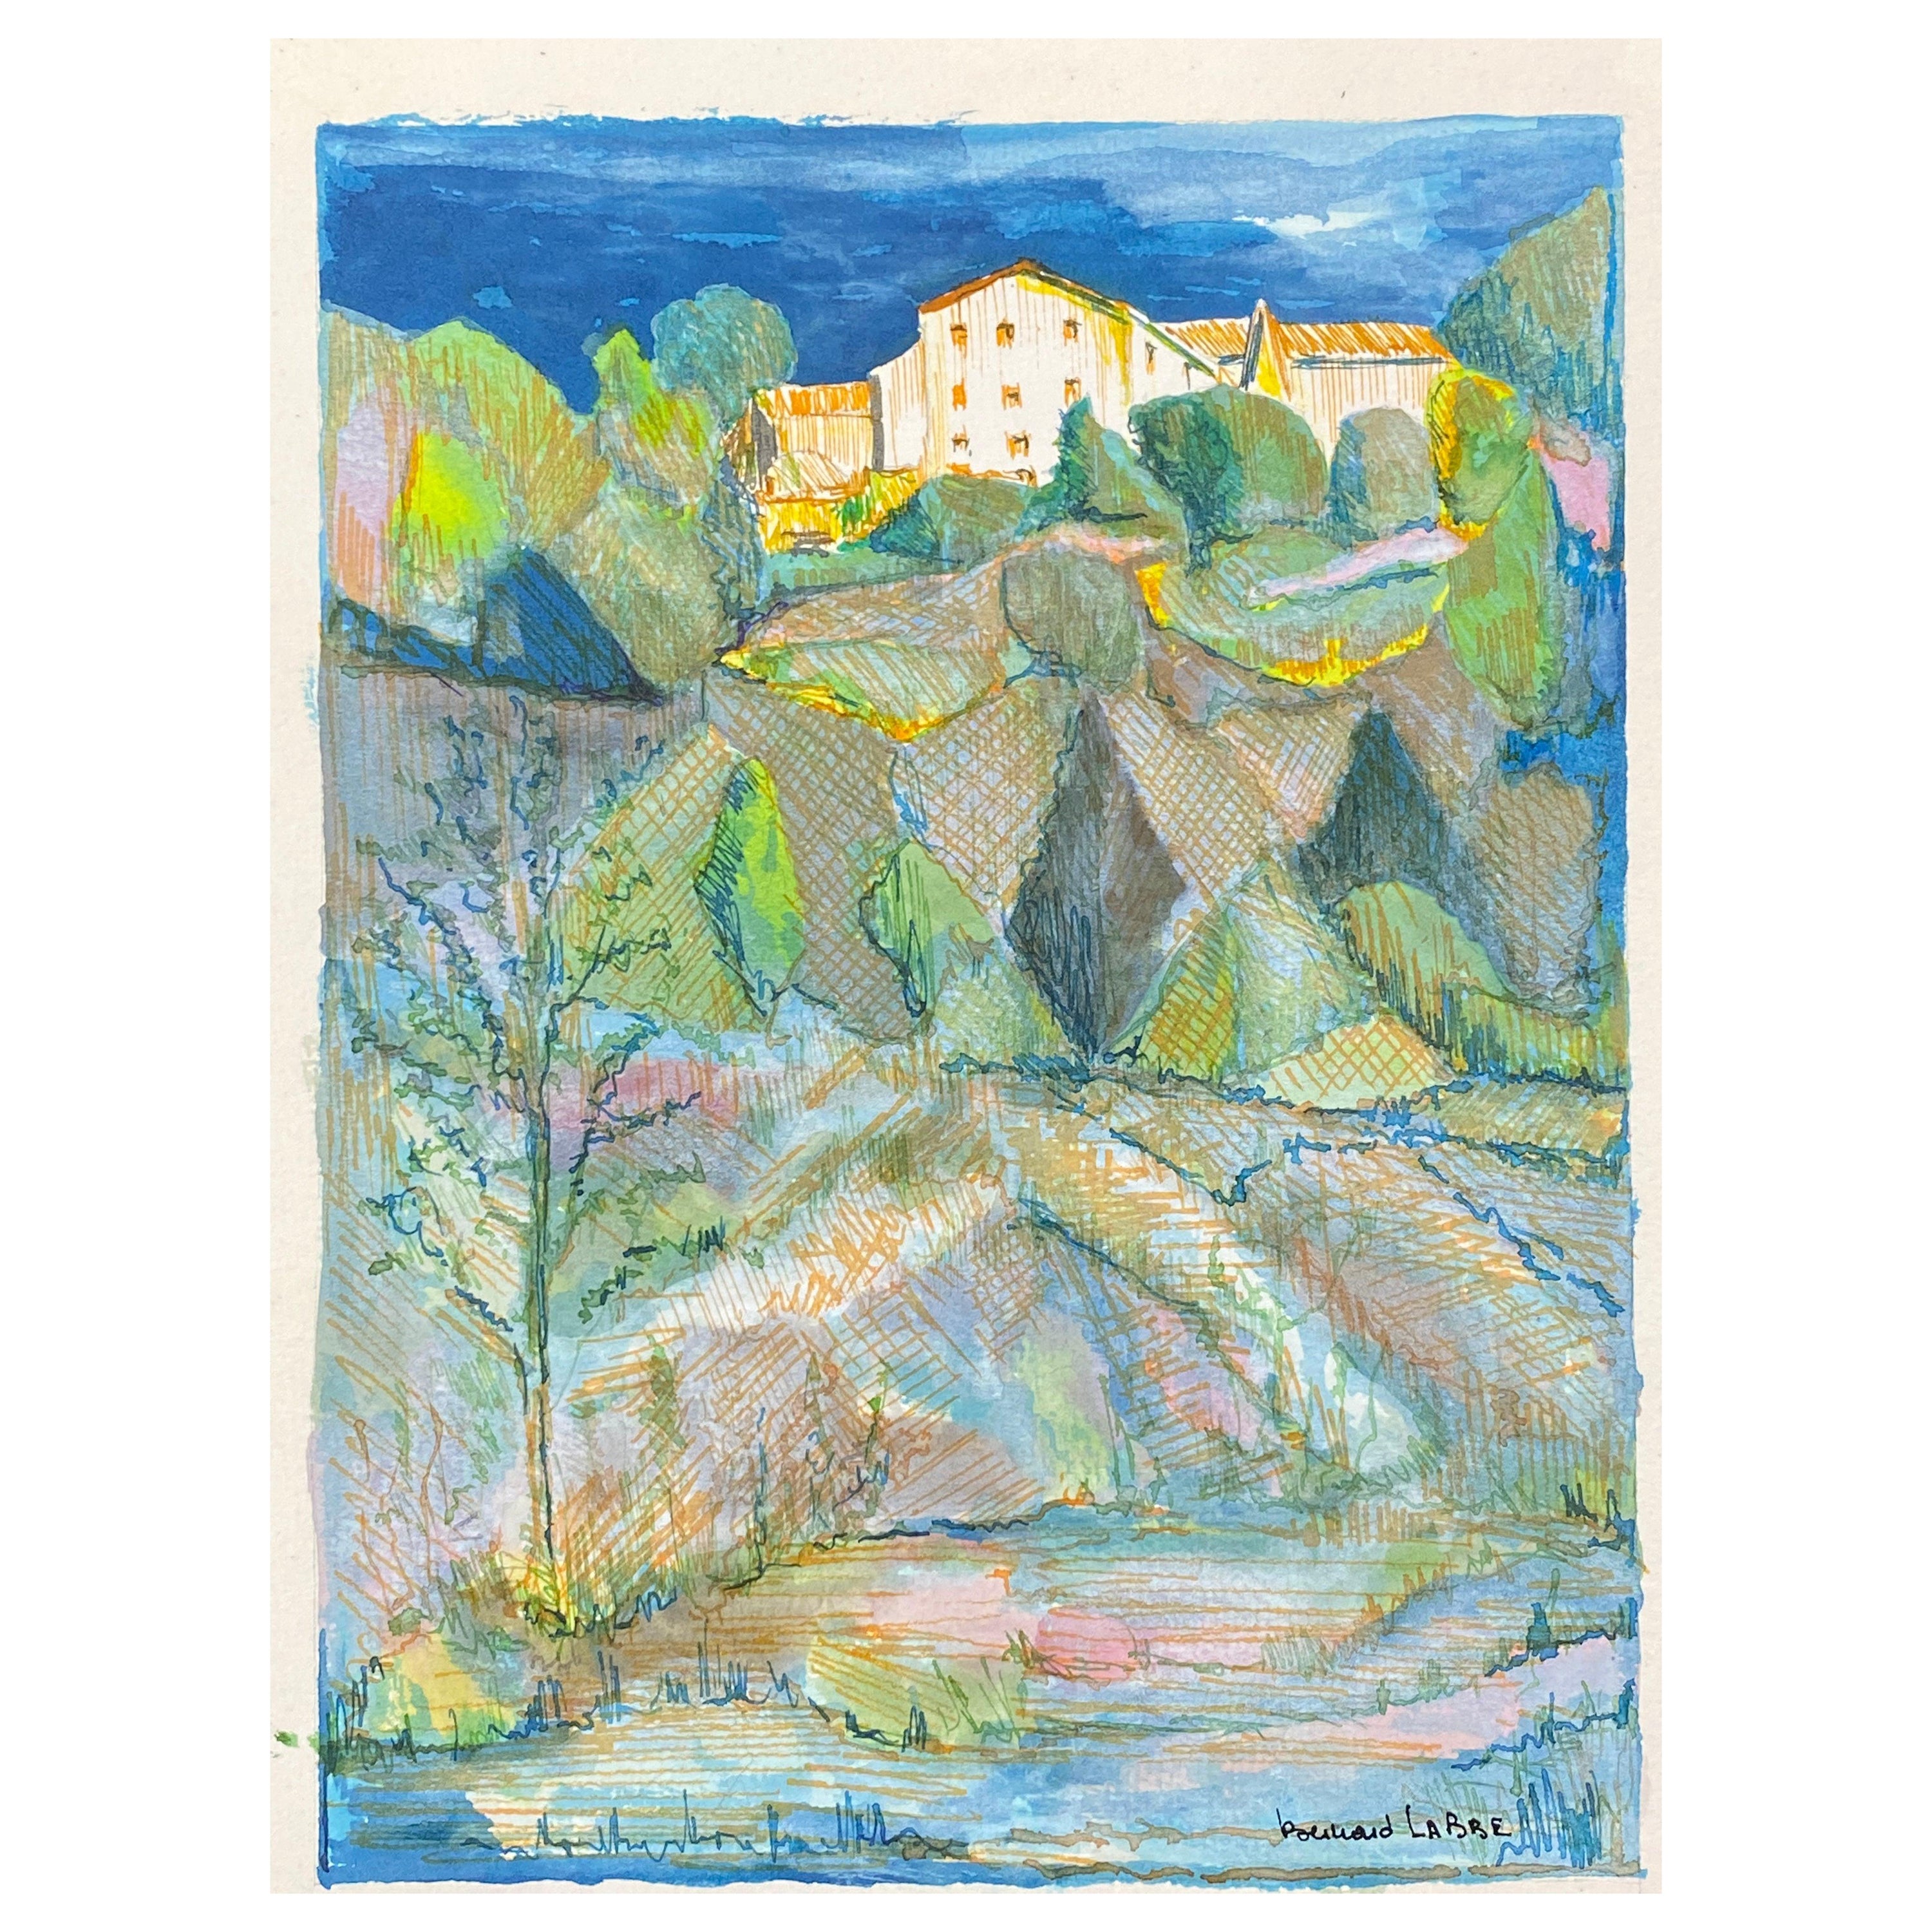 Peinture moderniste/ cubiste française des années 1950, signée, paysage français